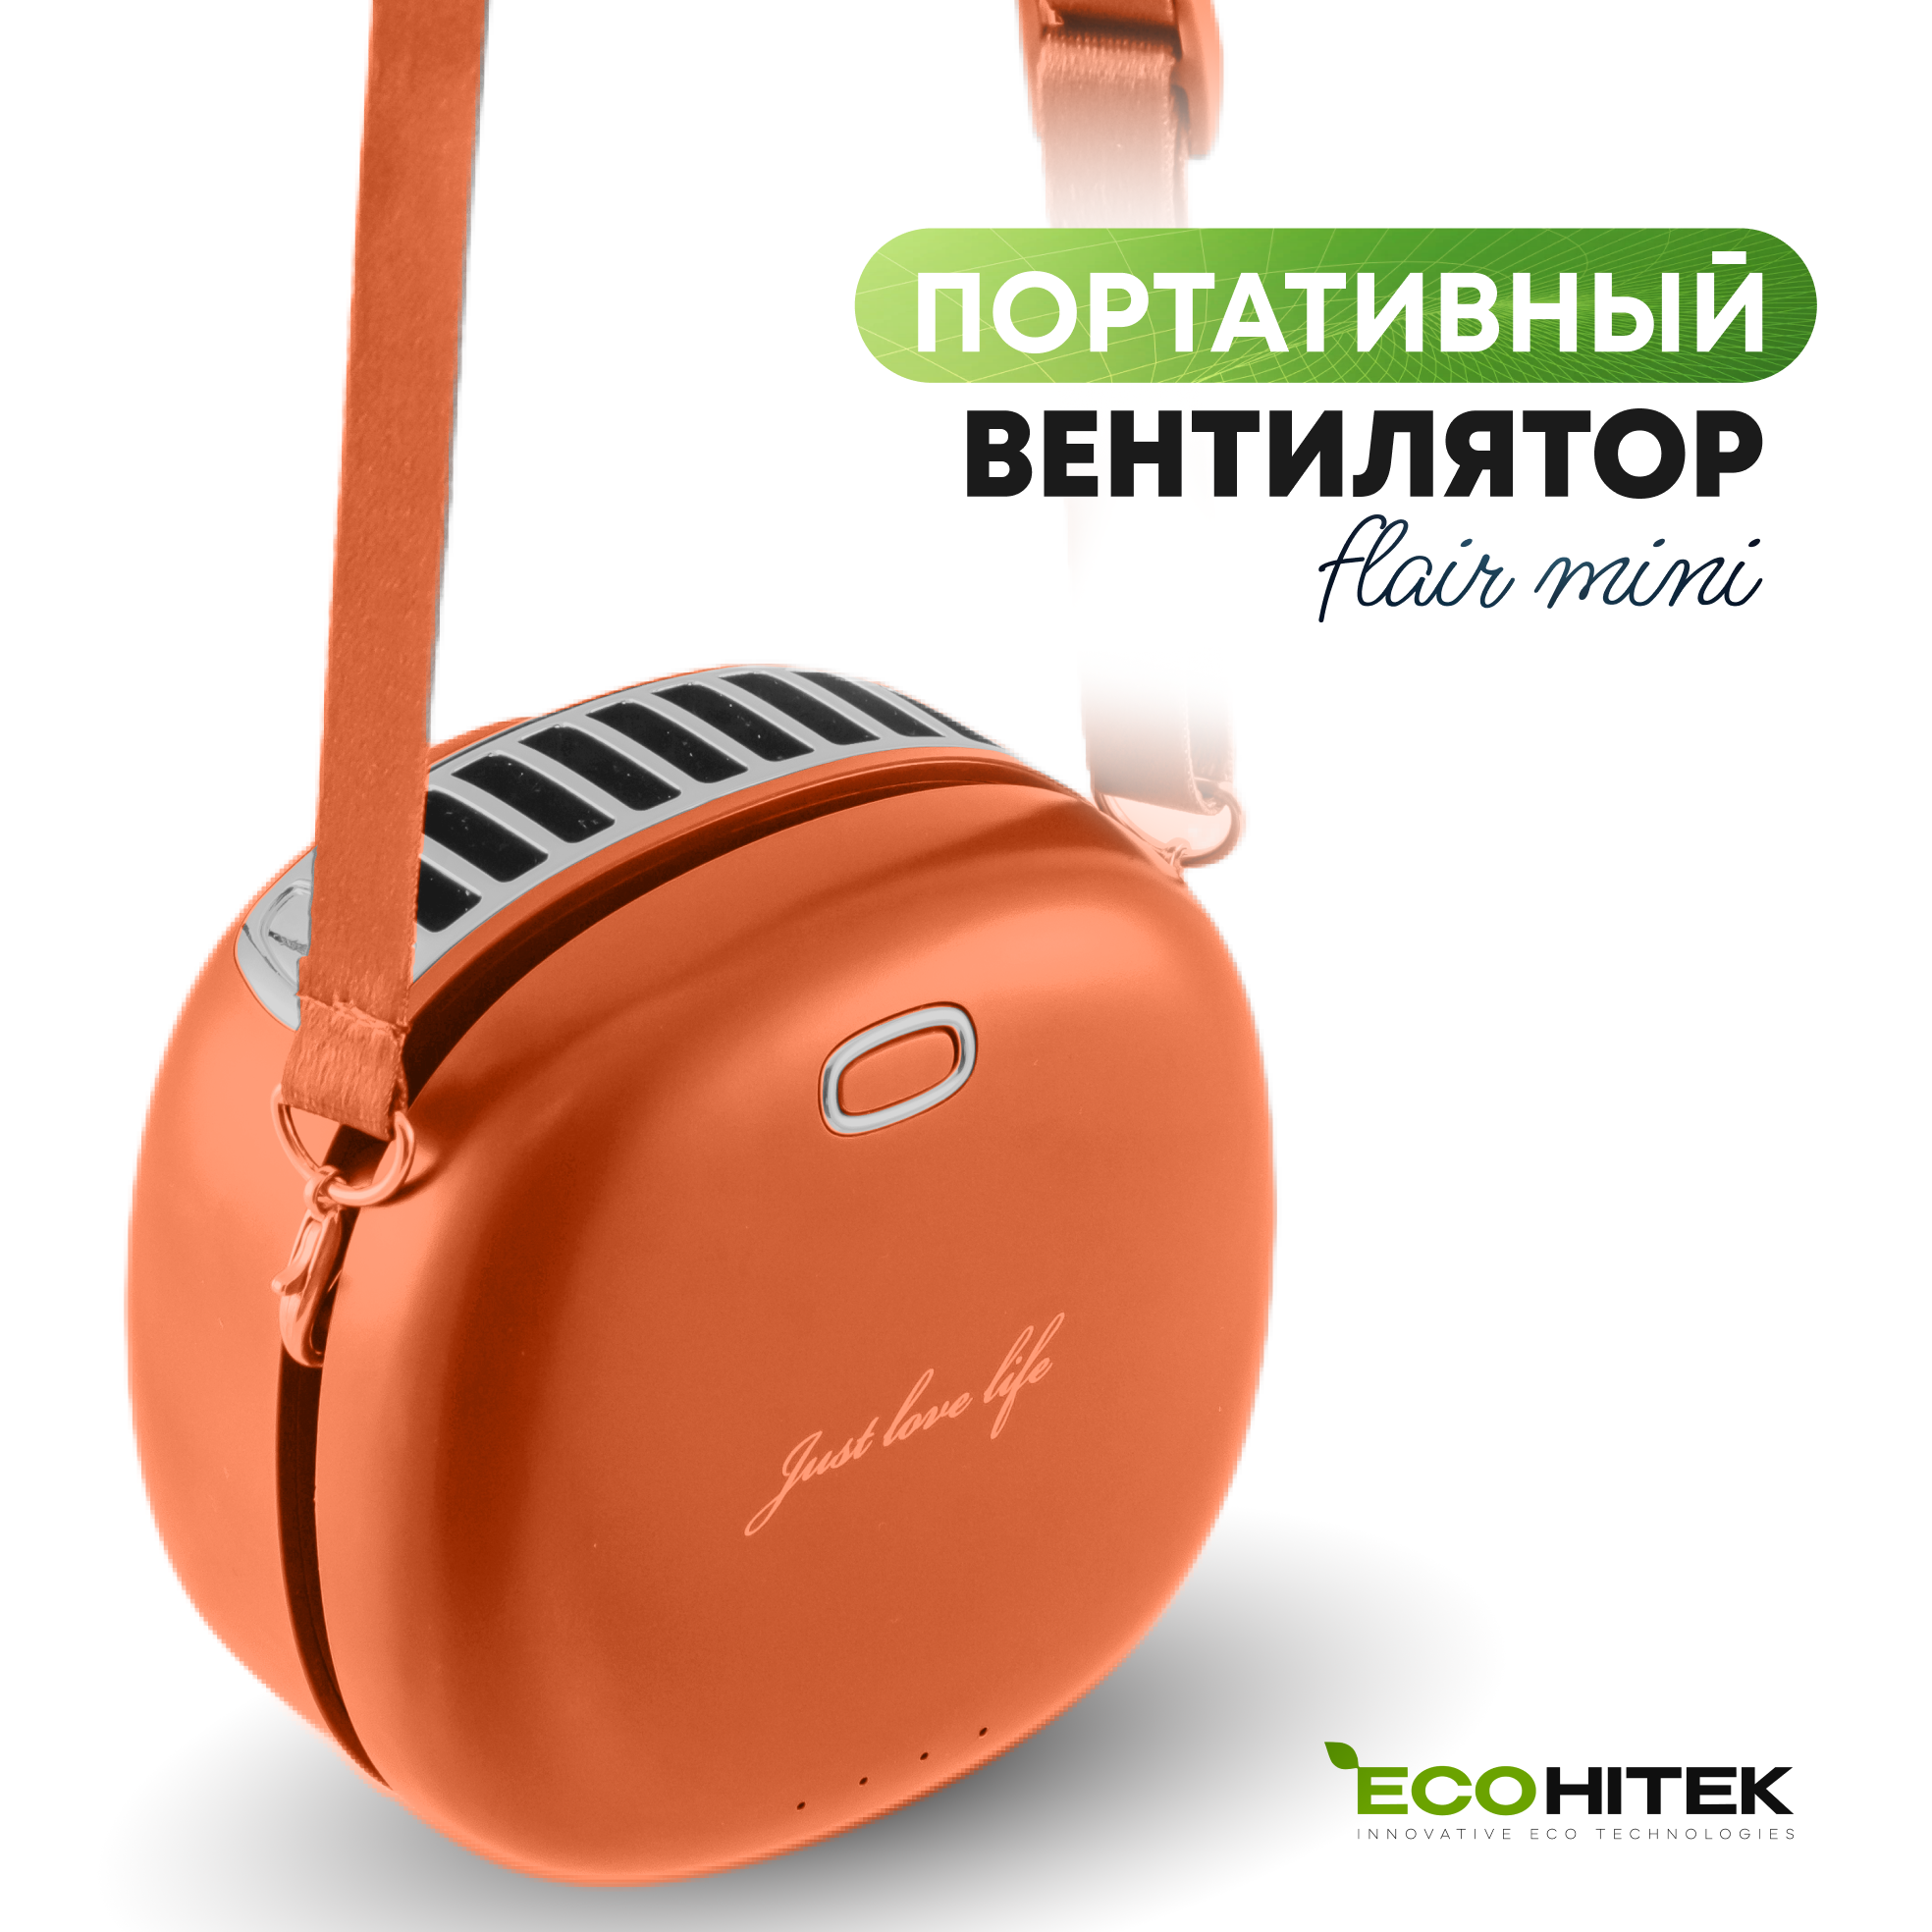 Мини вентилятор на шею EcoHitek апельсиновый - фото 1